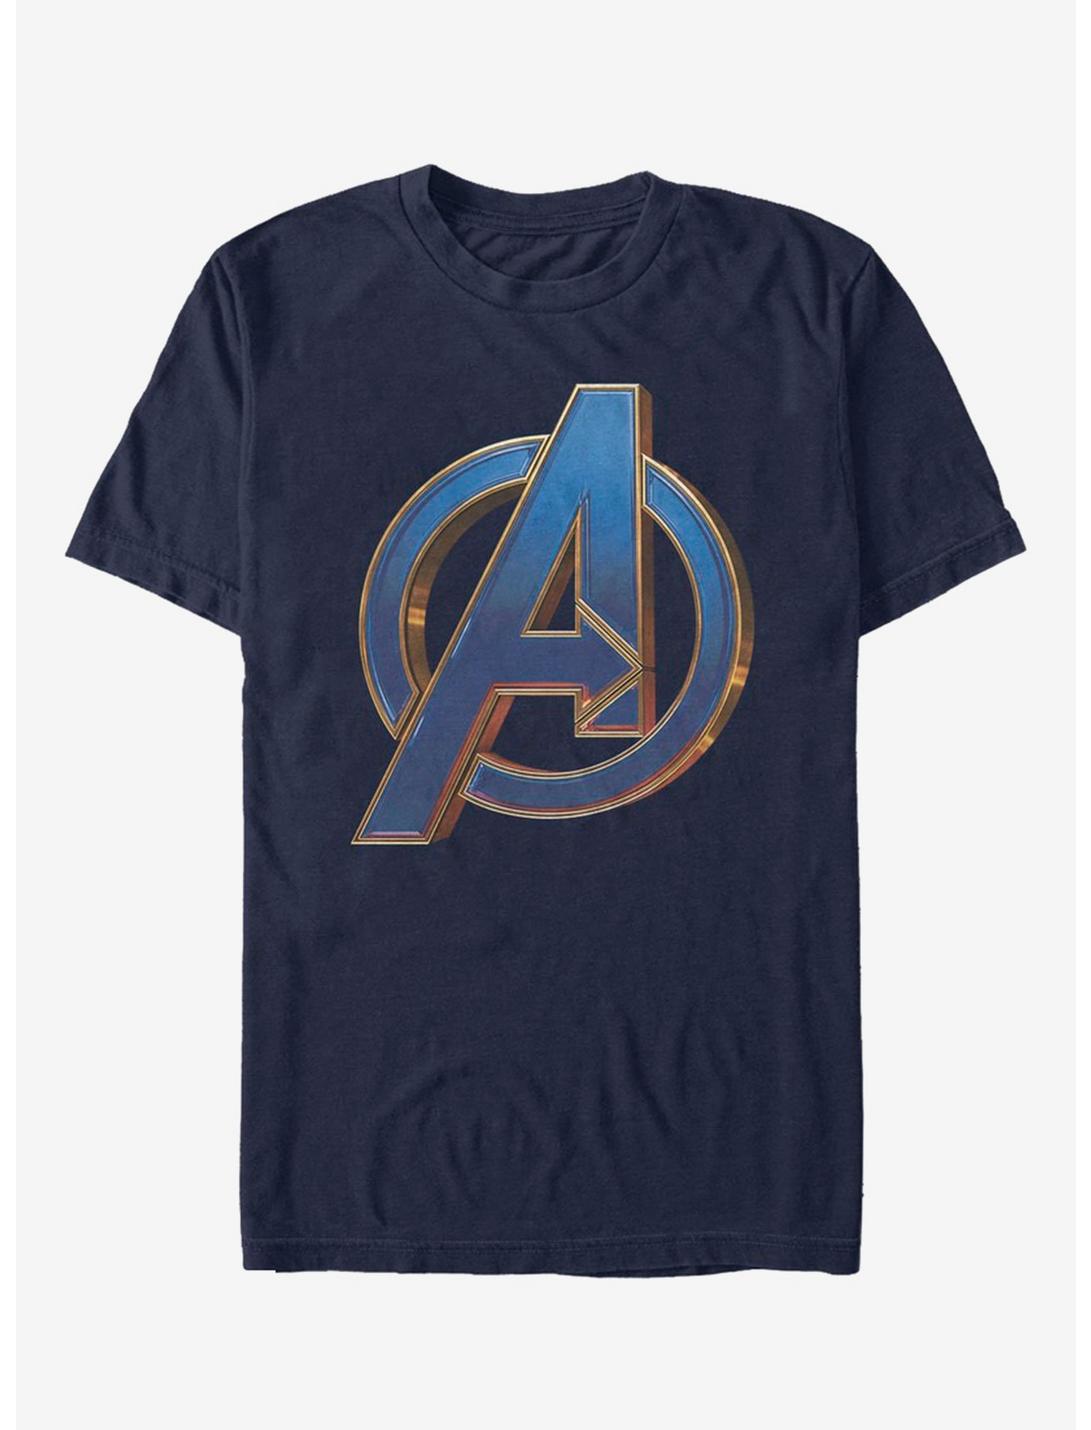 Marvel Avengers: Endgame Blue Logo Navy Blue T-Shirt, NAVY, hi-res